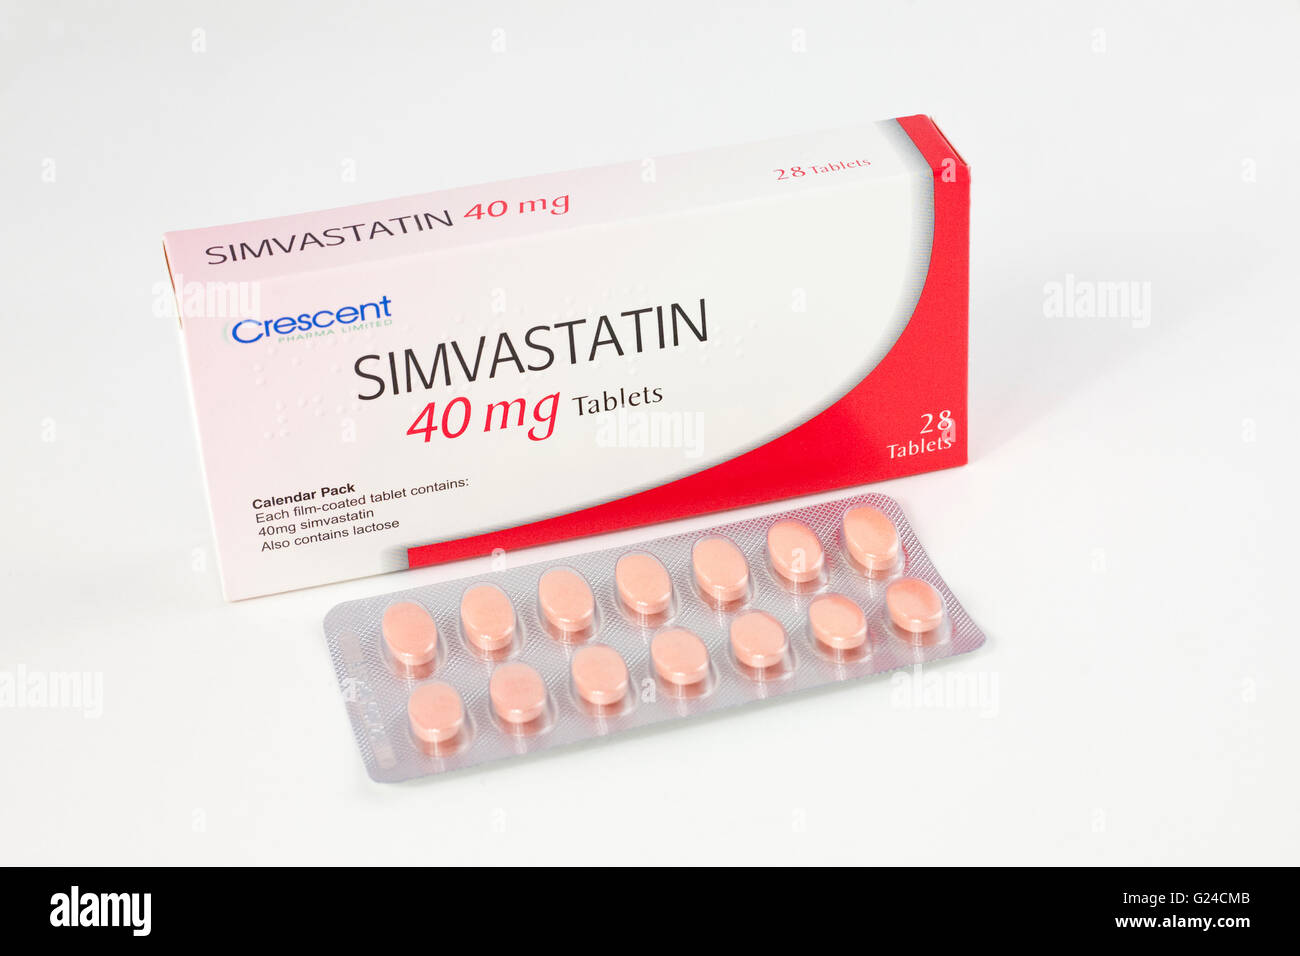 Simvastatina 40 mg comprimidos para el tratamiento del colesterol alto, que causa la acumulación de grasa en las paredes de las arterias Foto de stock